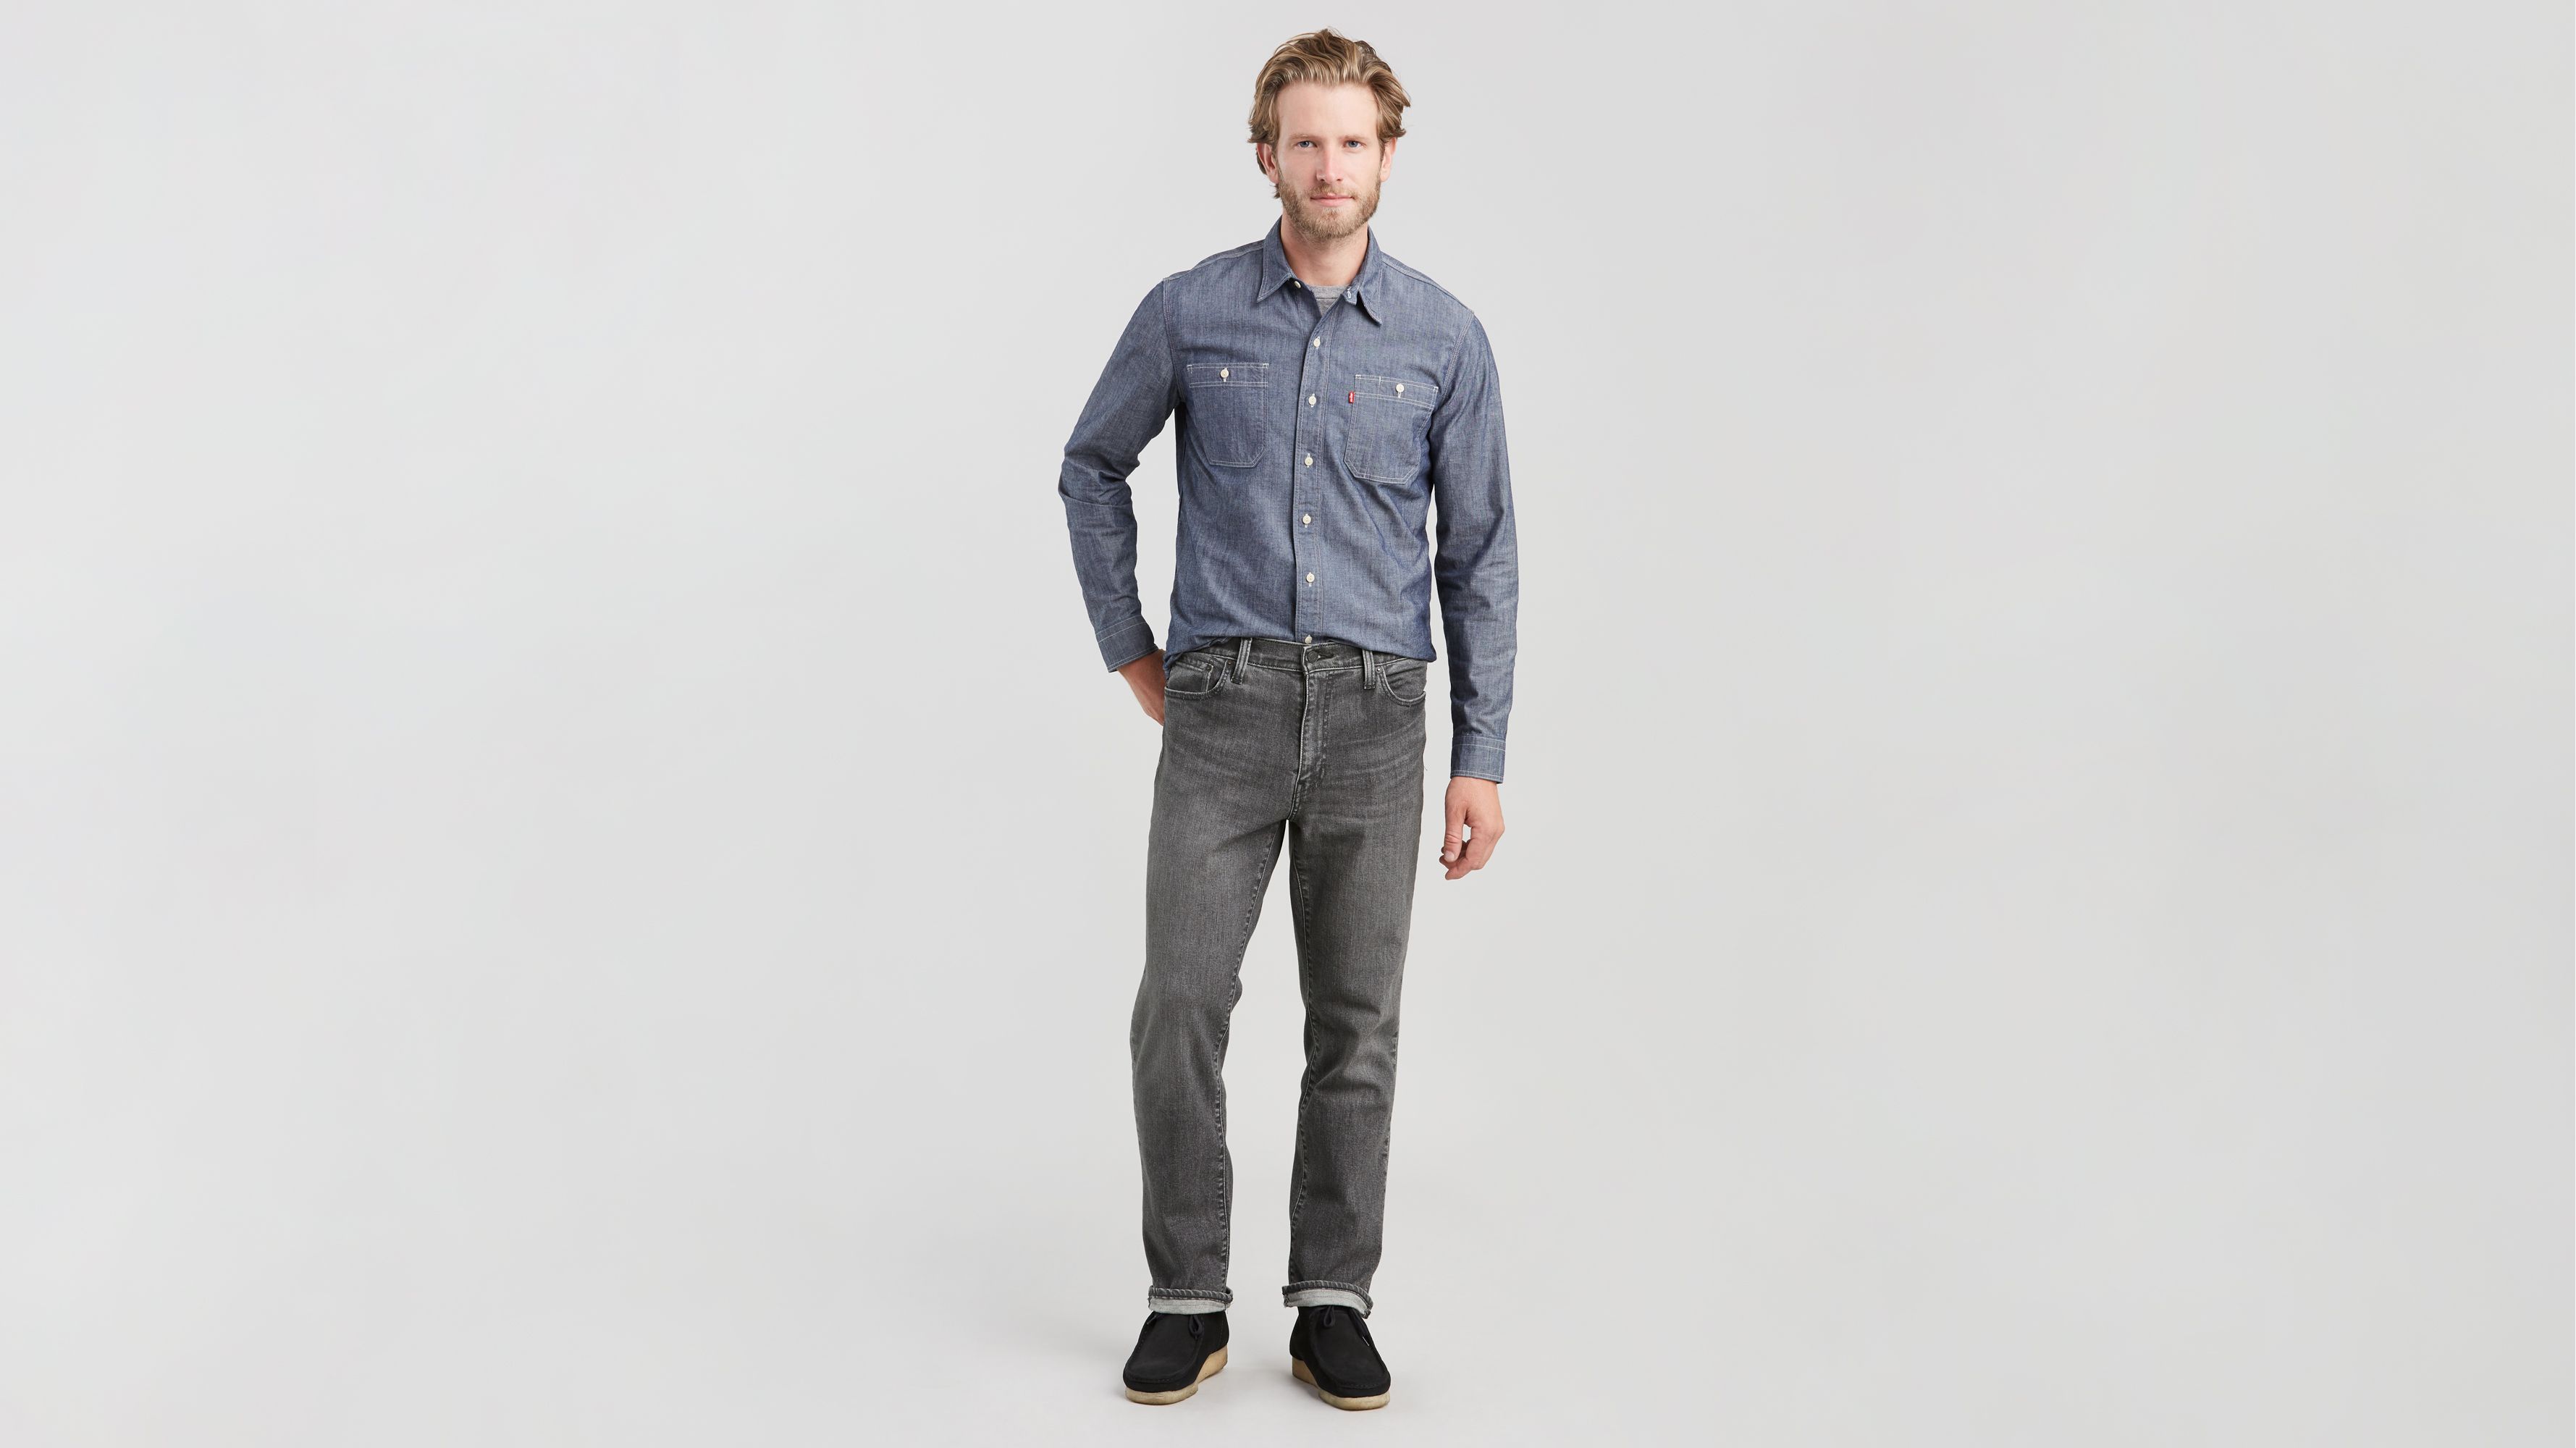 levis 541 grey jeans